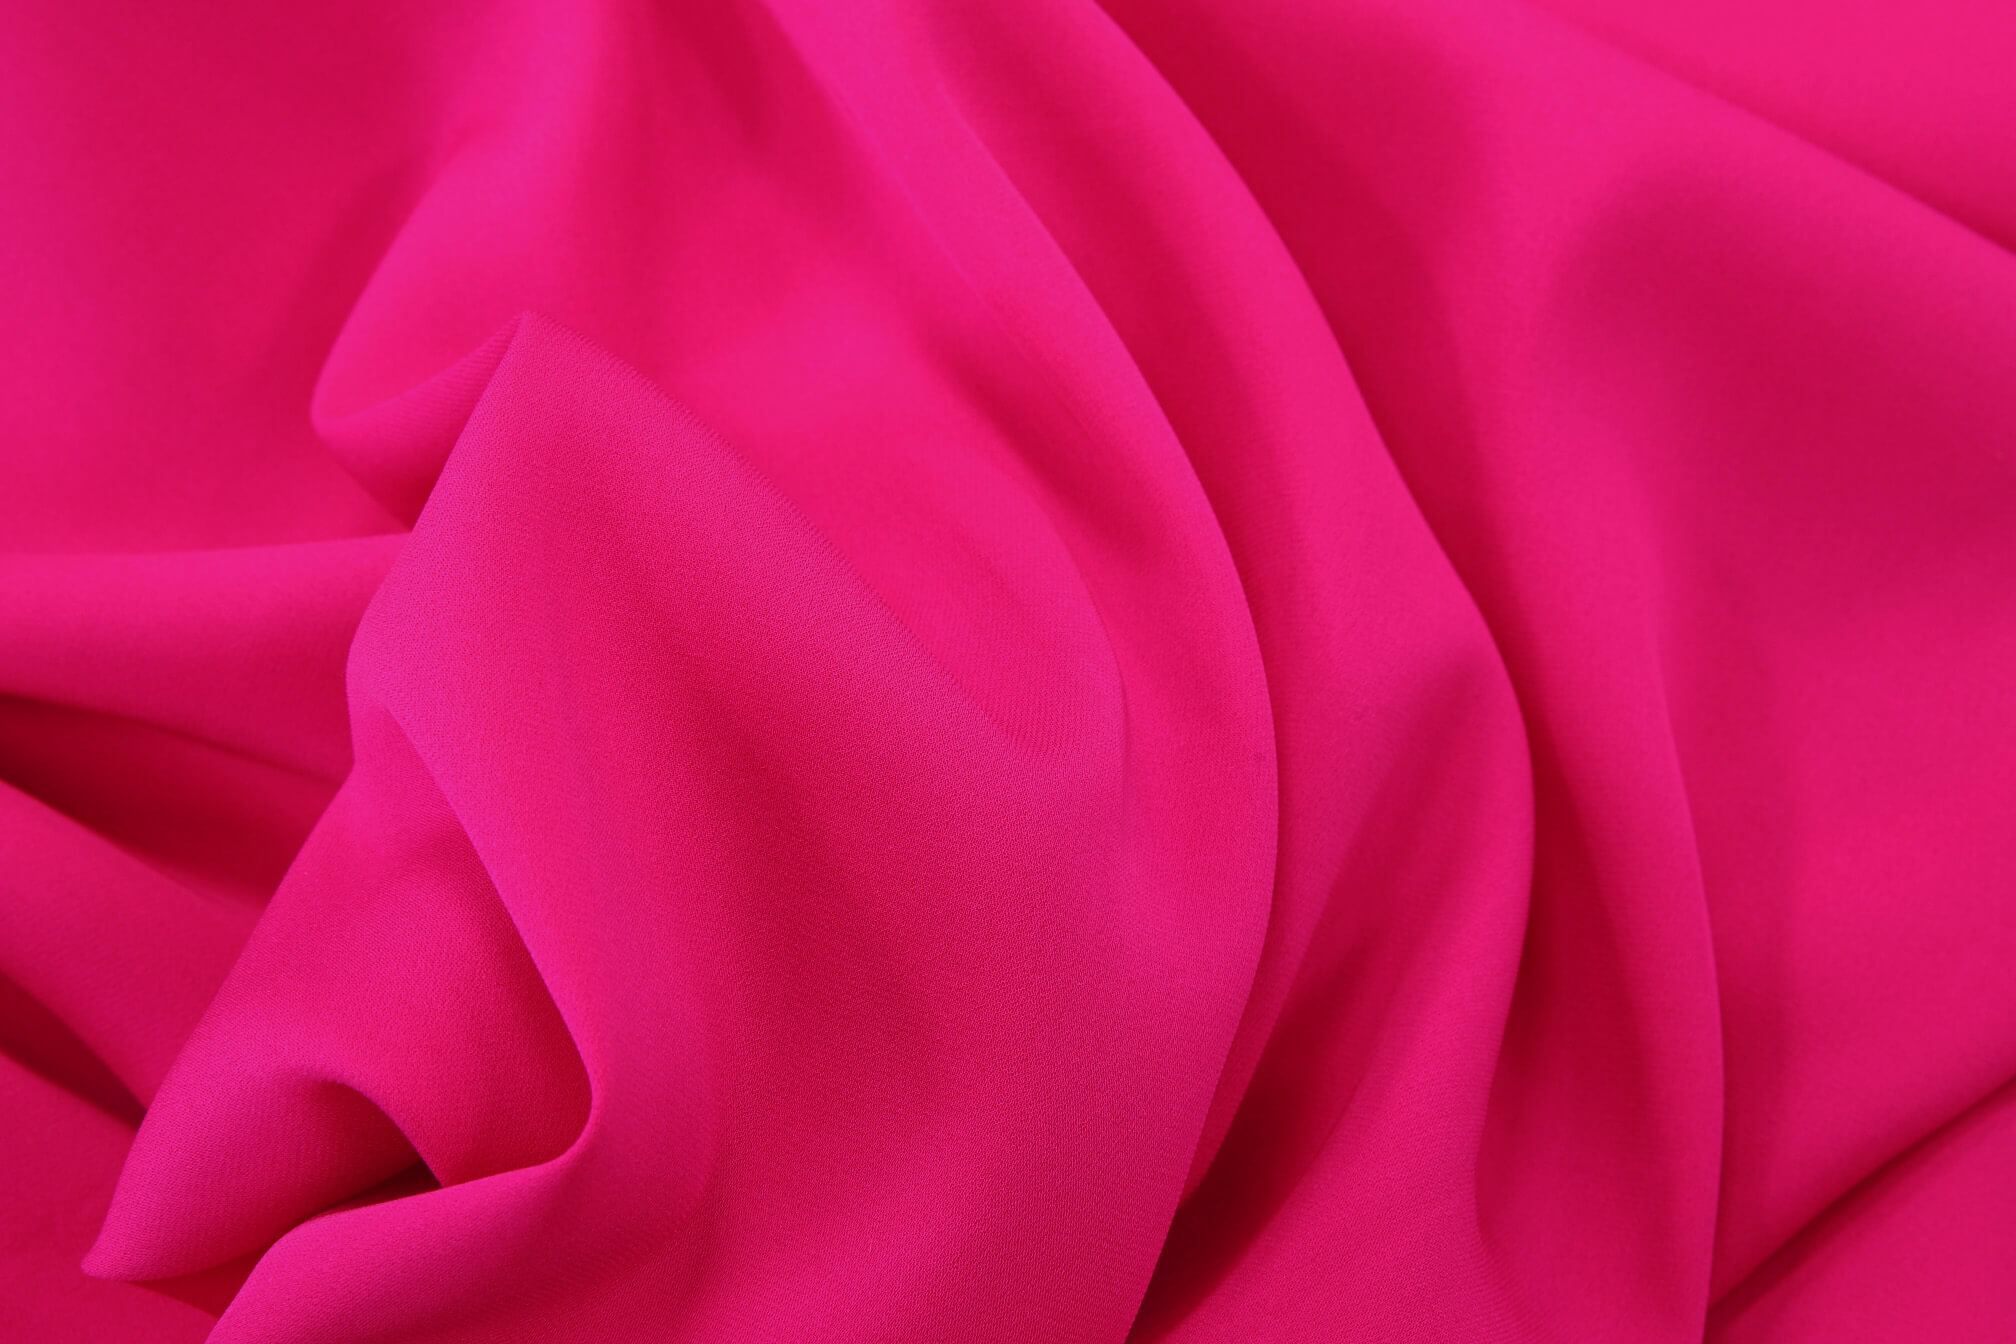 Шелковый крепдешин Valentino, цвет Розовый, фото 1